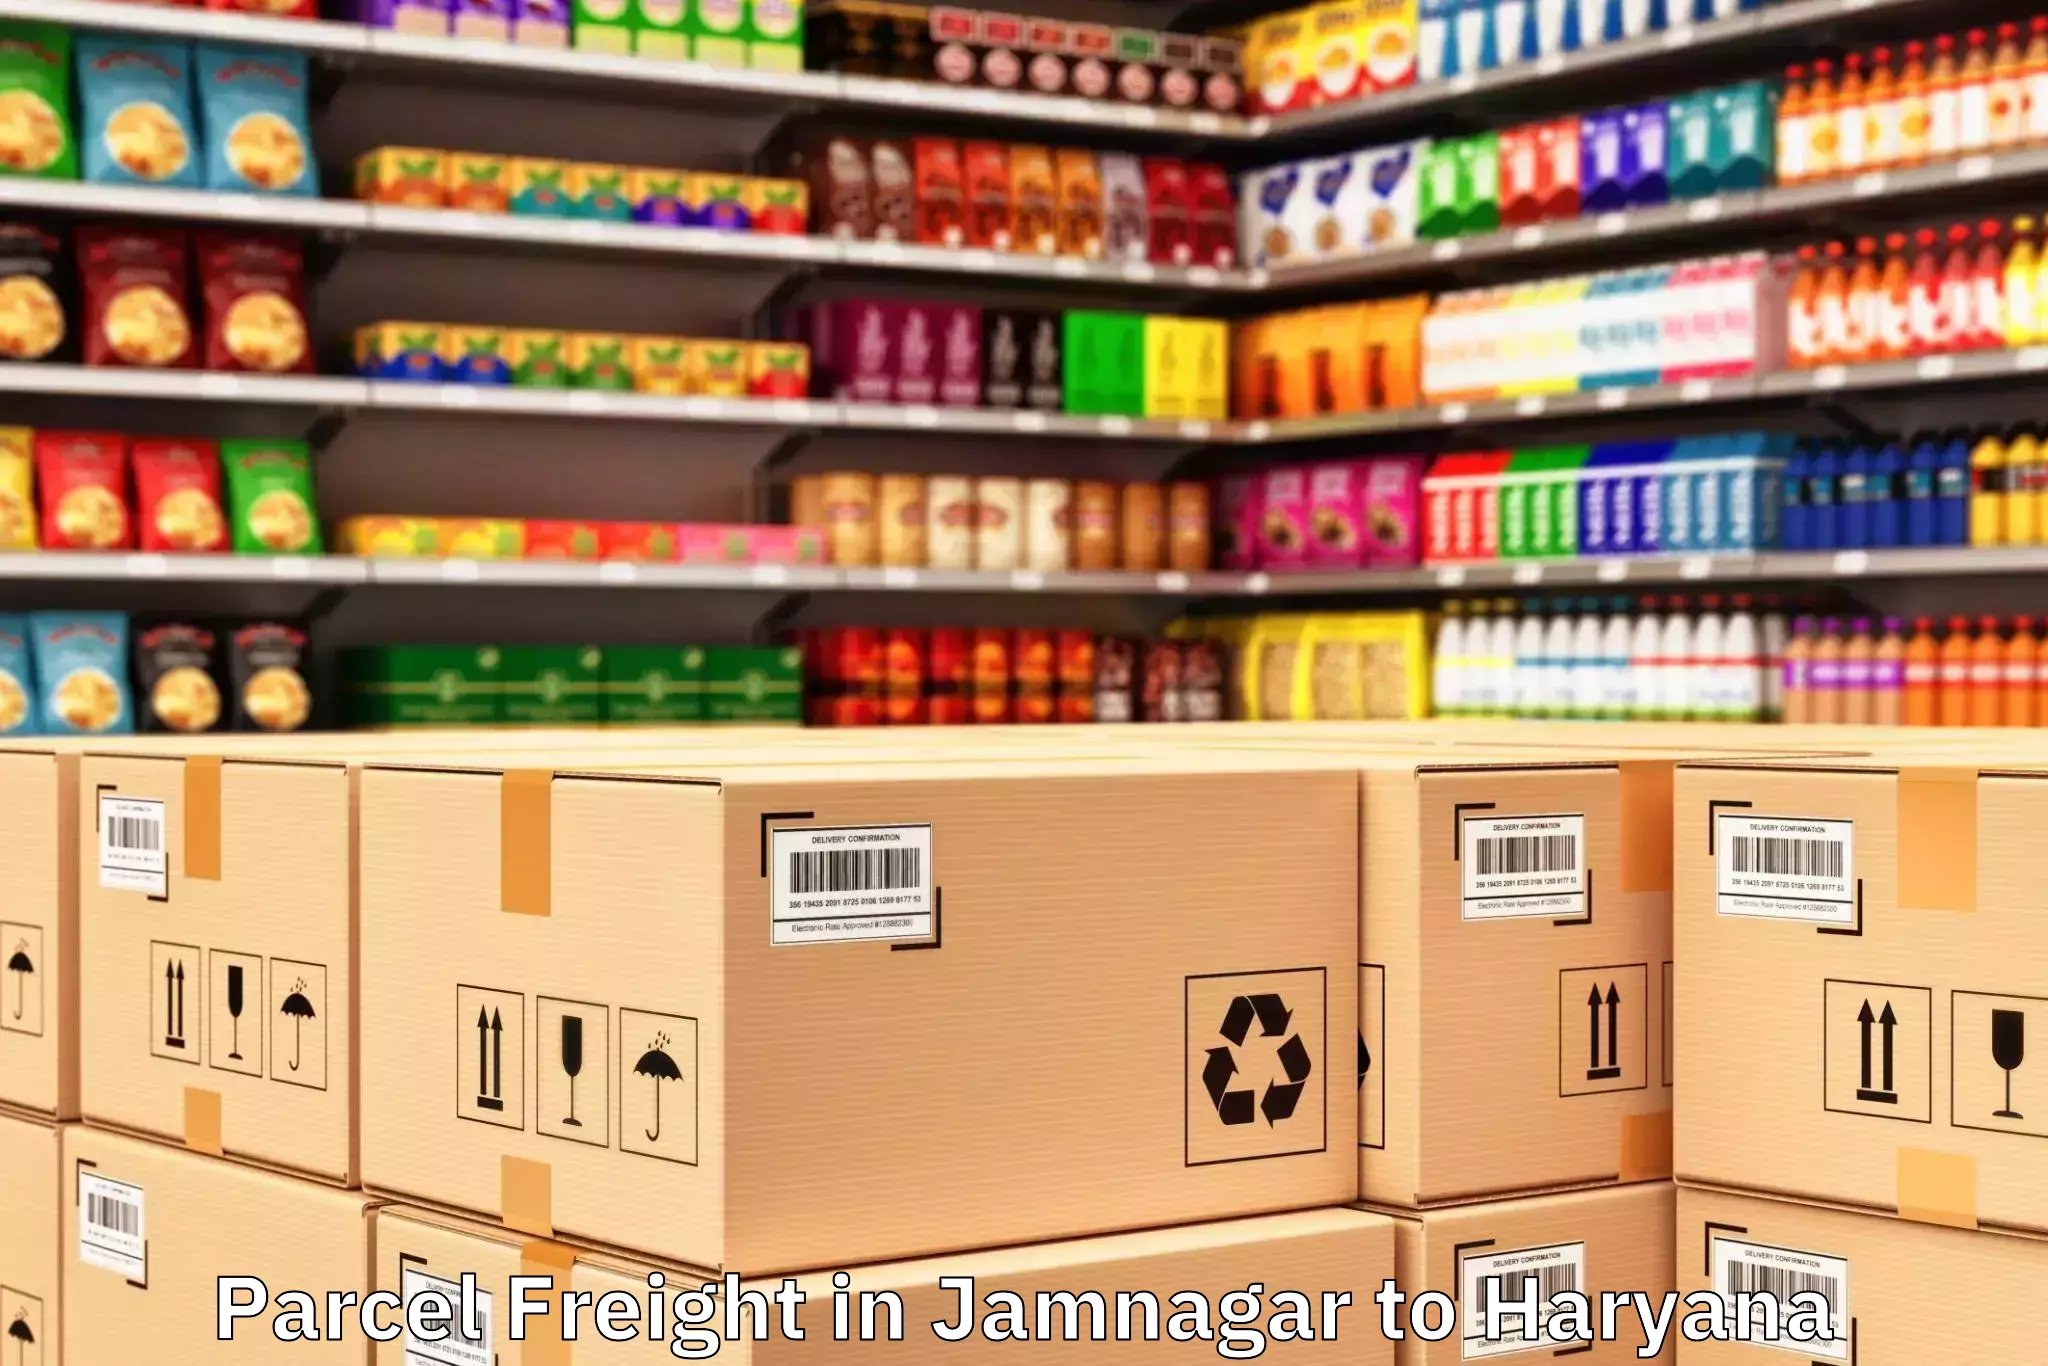 Top Jamnagar to Haryana Parcel Freight Available